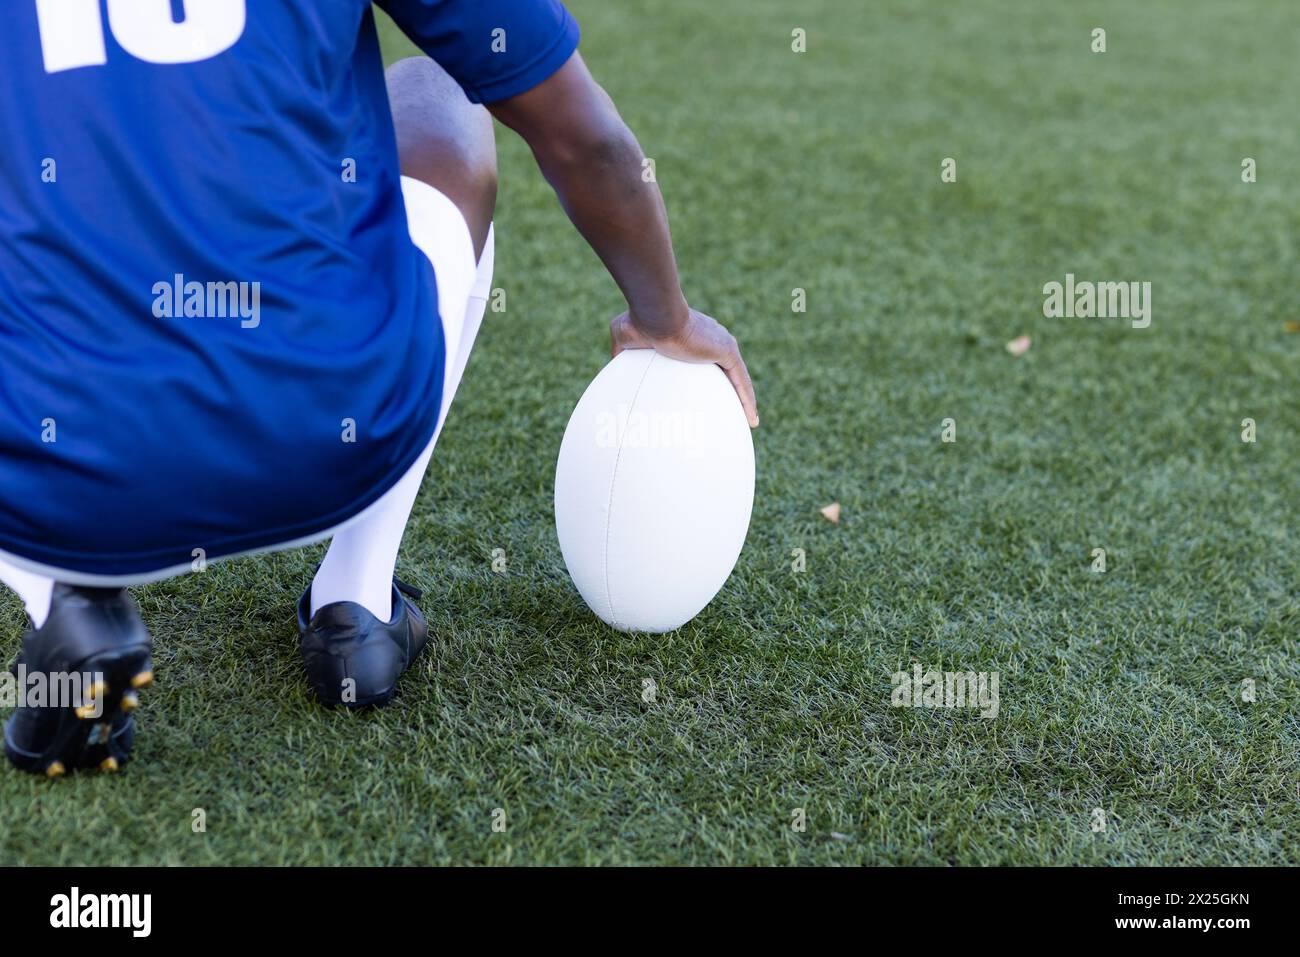 La jeunesse noire en jersey bleu saisit le ballon de rugby sur le terrain en herbe Banque D'Images